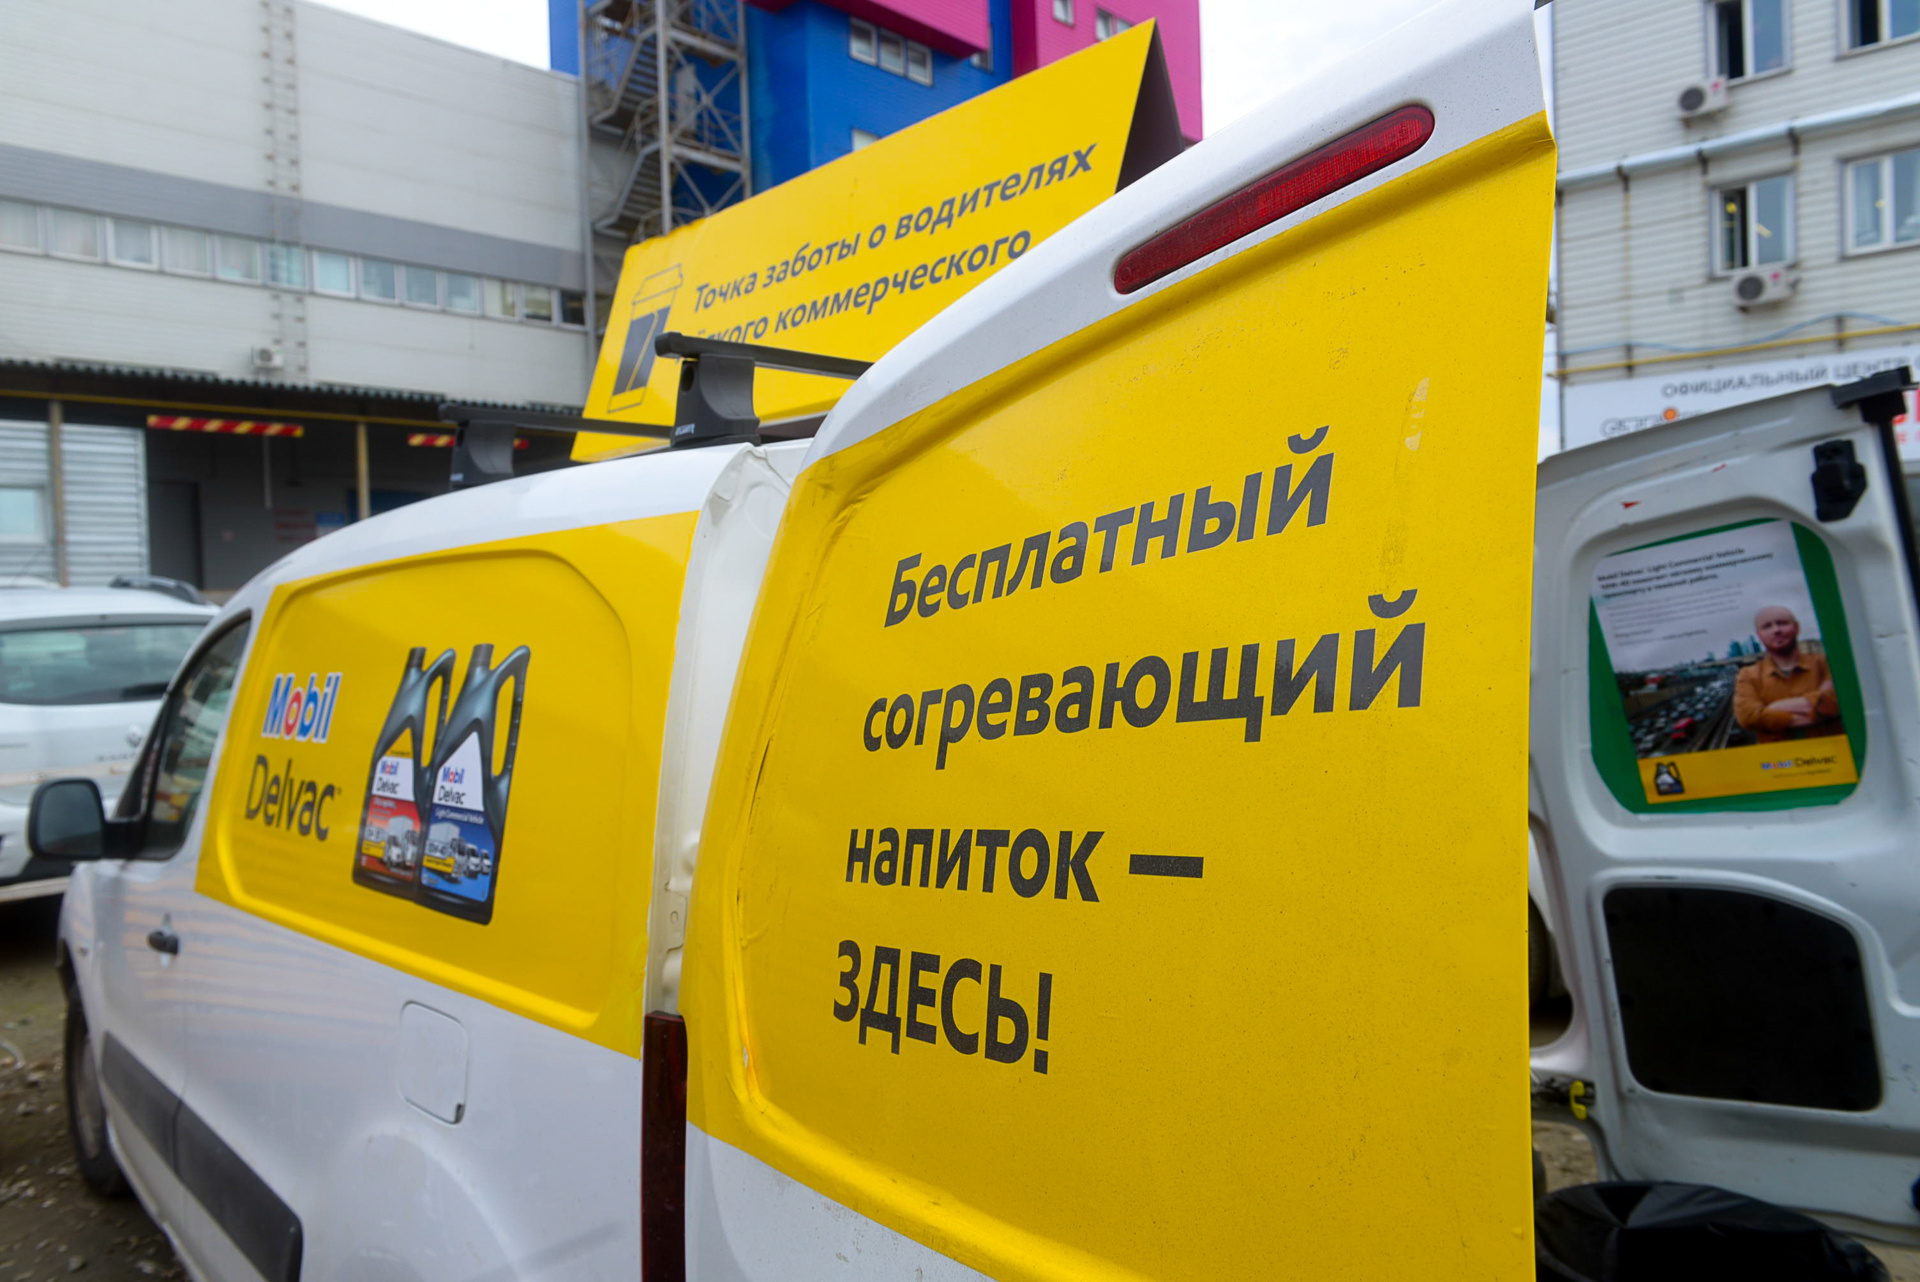 «Дни заботы о водителях» прошли уже во многих городах России